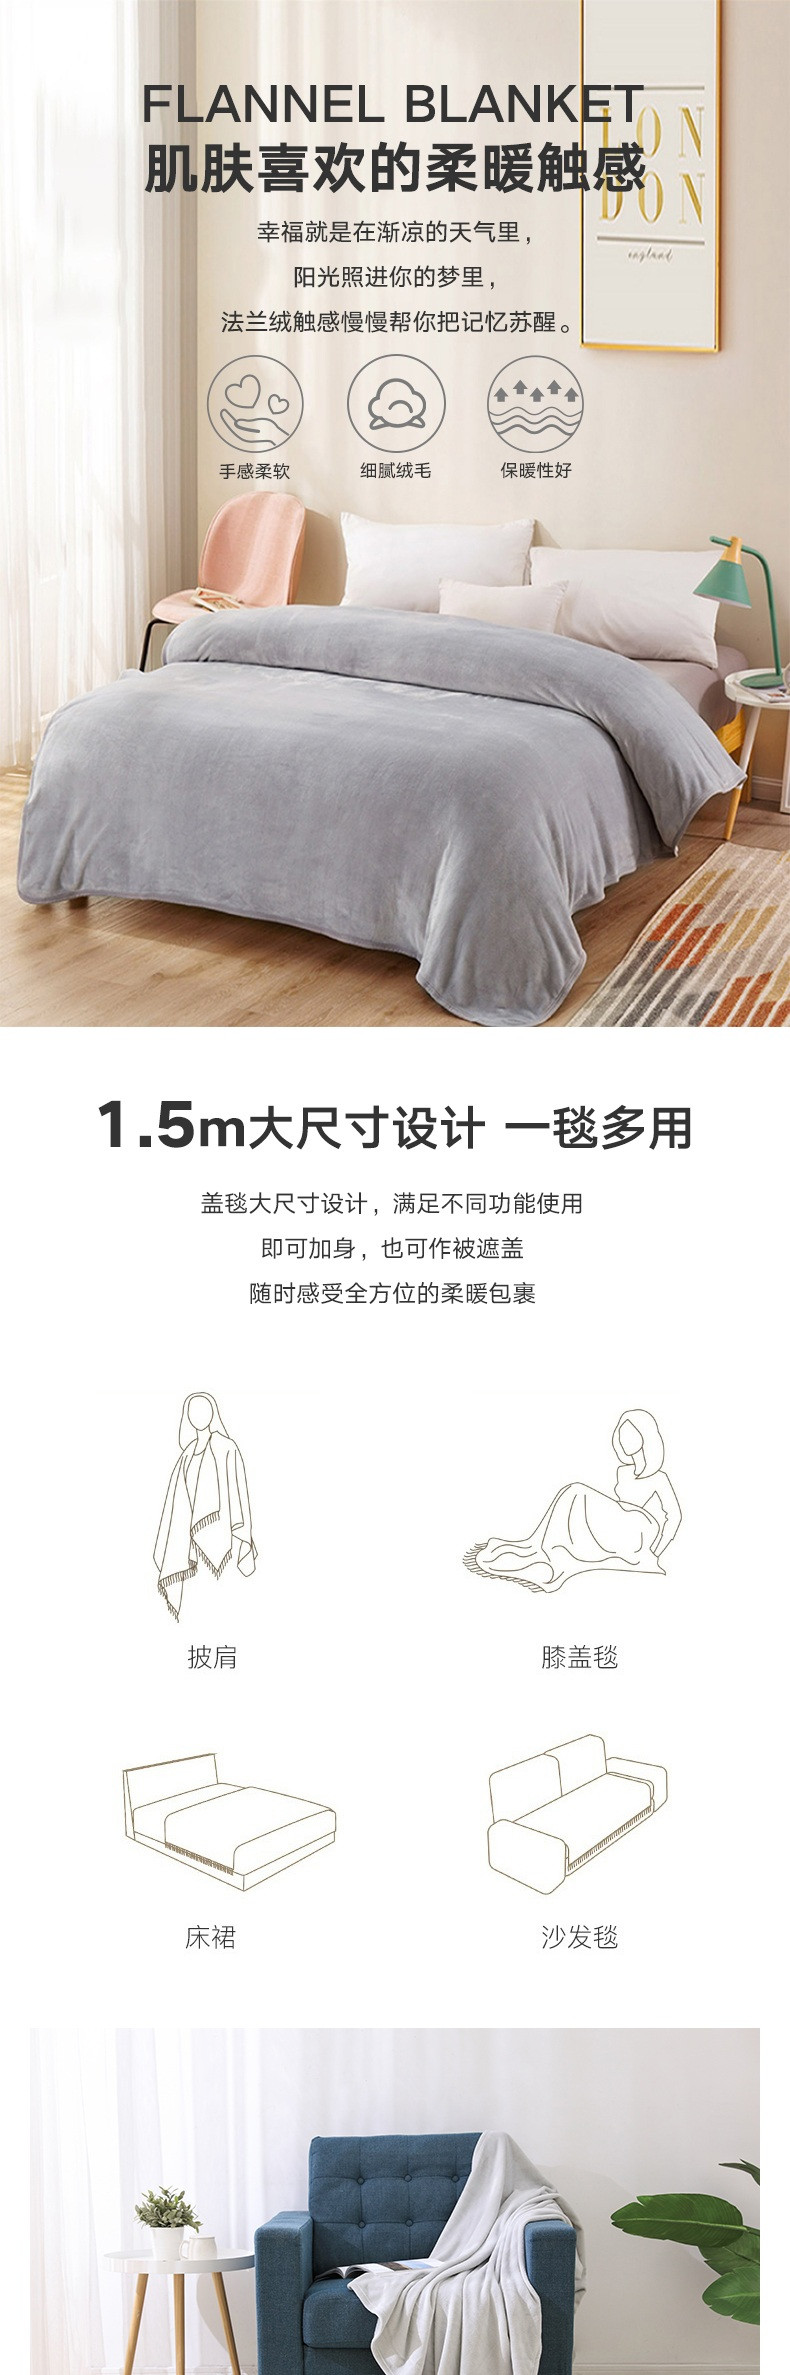 ABS爱彼此 简约多用法兰绒家居毯午睡毯空调毯2米*1.5米